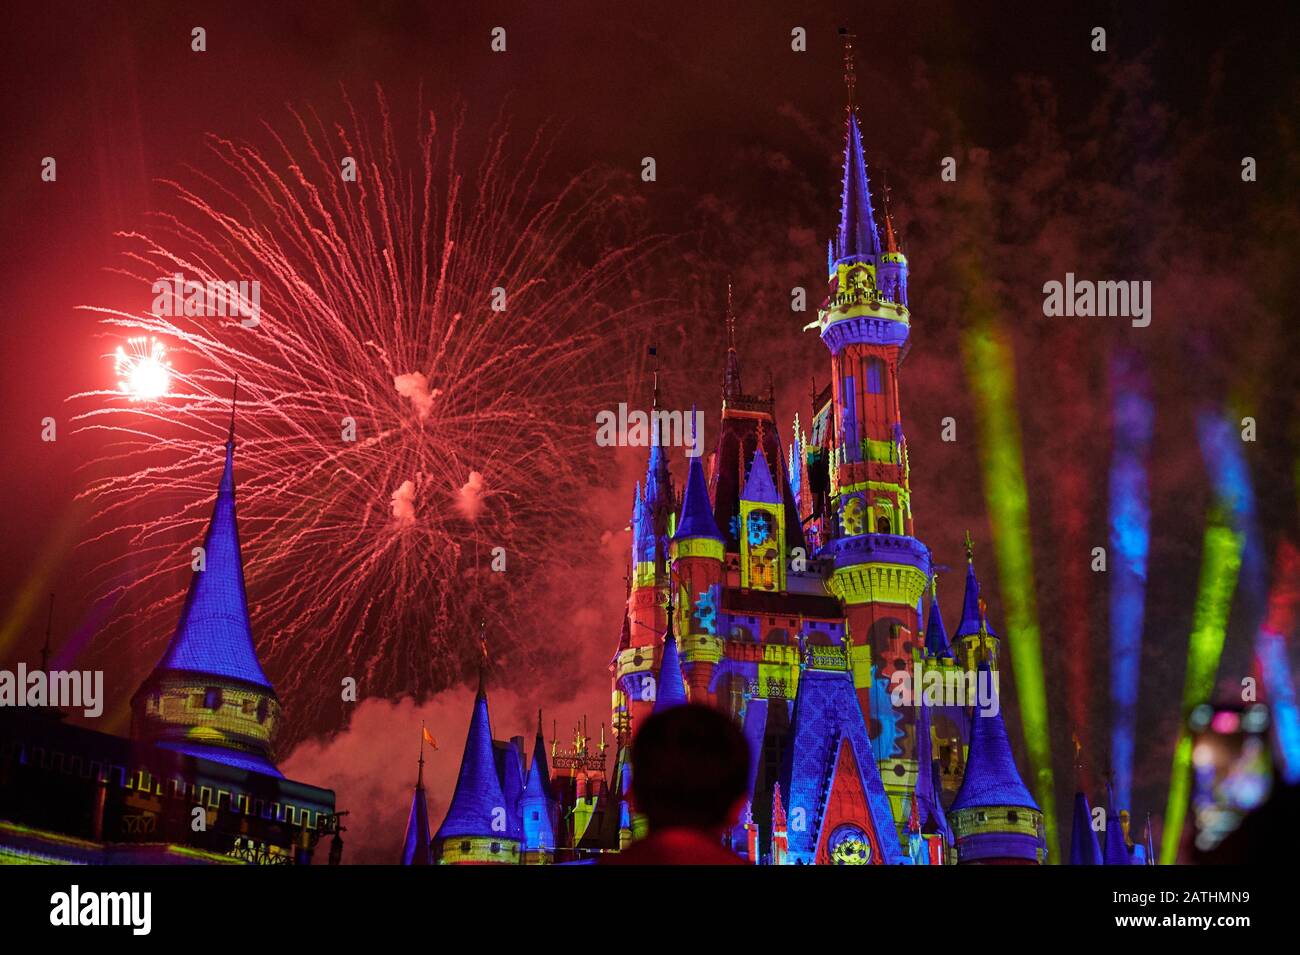 Orlando, USA - 19 gennaio 2020: Fuochi d'artificio colorati al parco disney vista orizzontale di notte Foto Stock